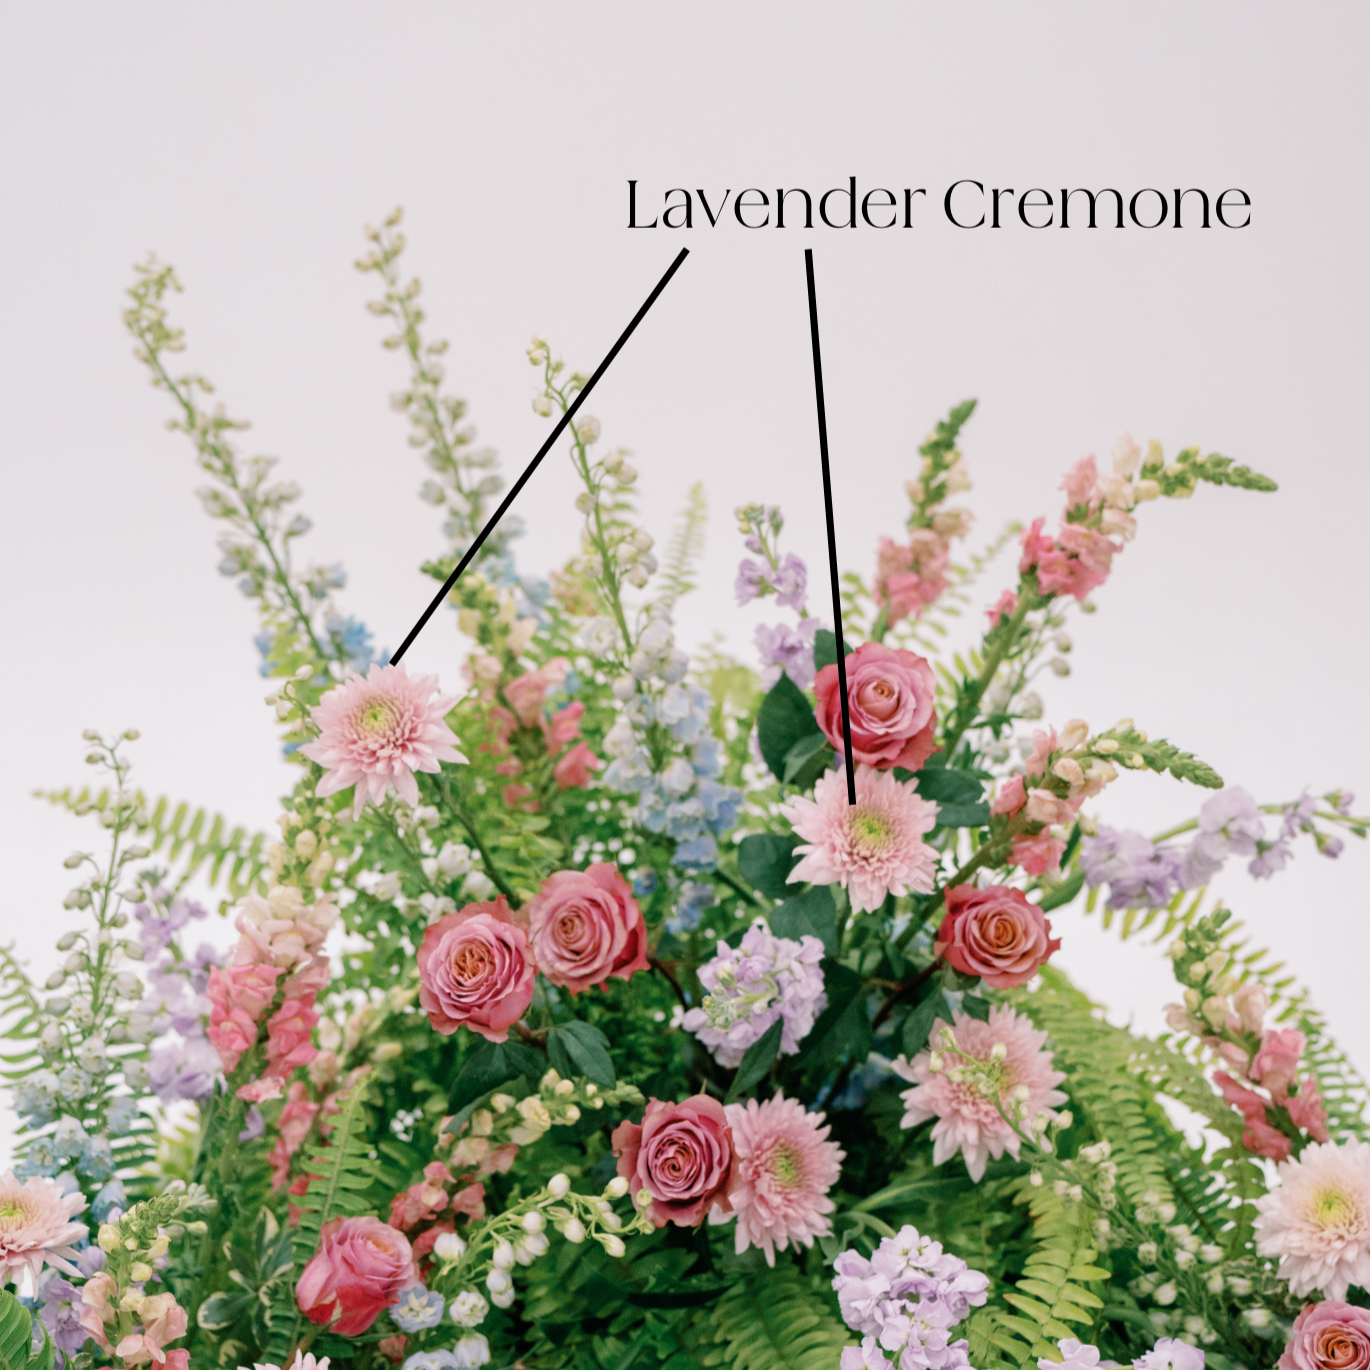 lavender cremone flower